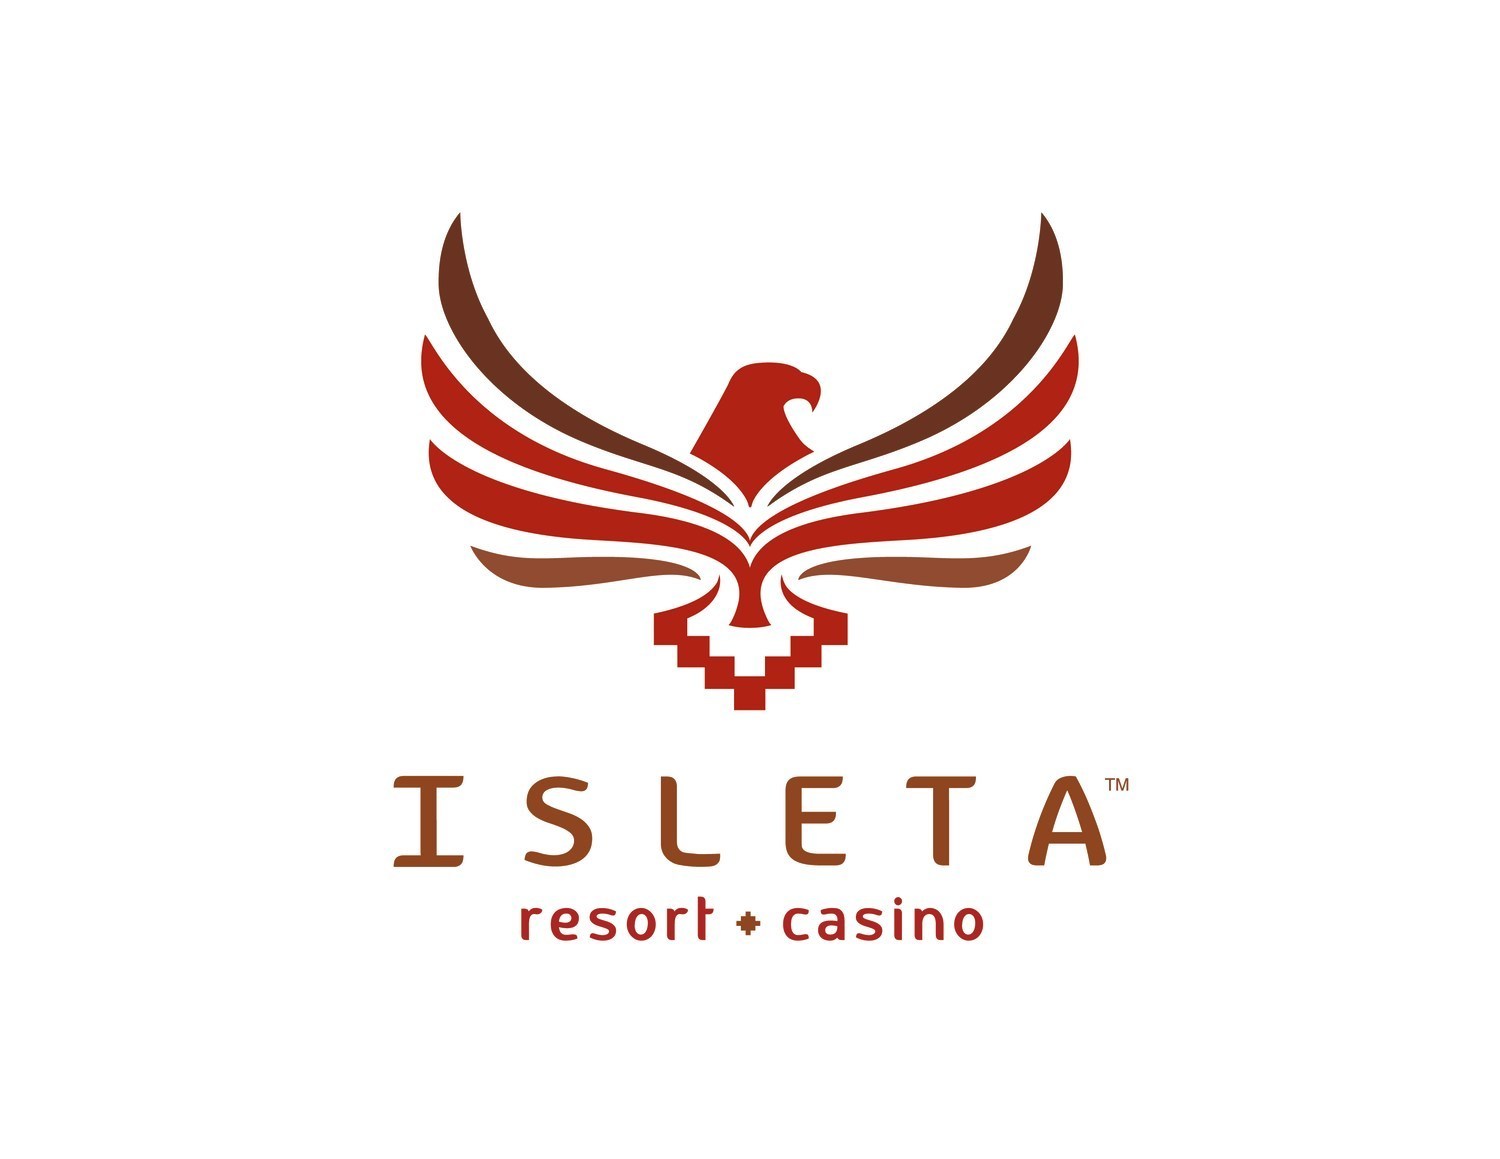 Isleta resort and casino restaurants boston